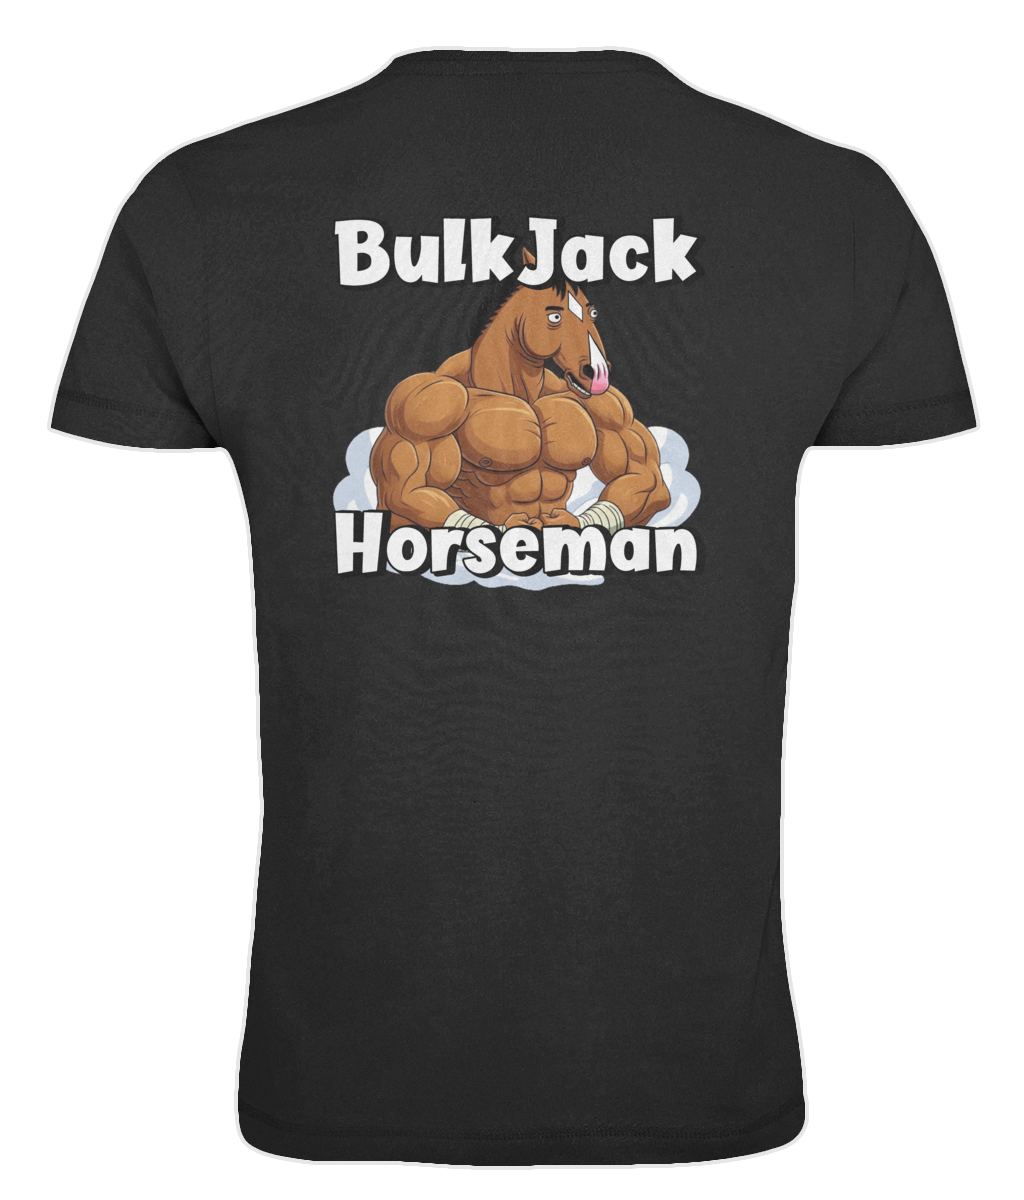 "BulkJack Horseman" - Голяма тениска